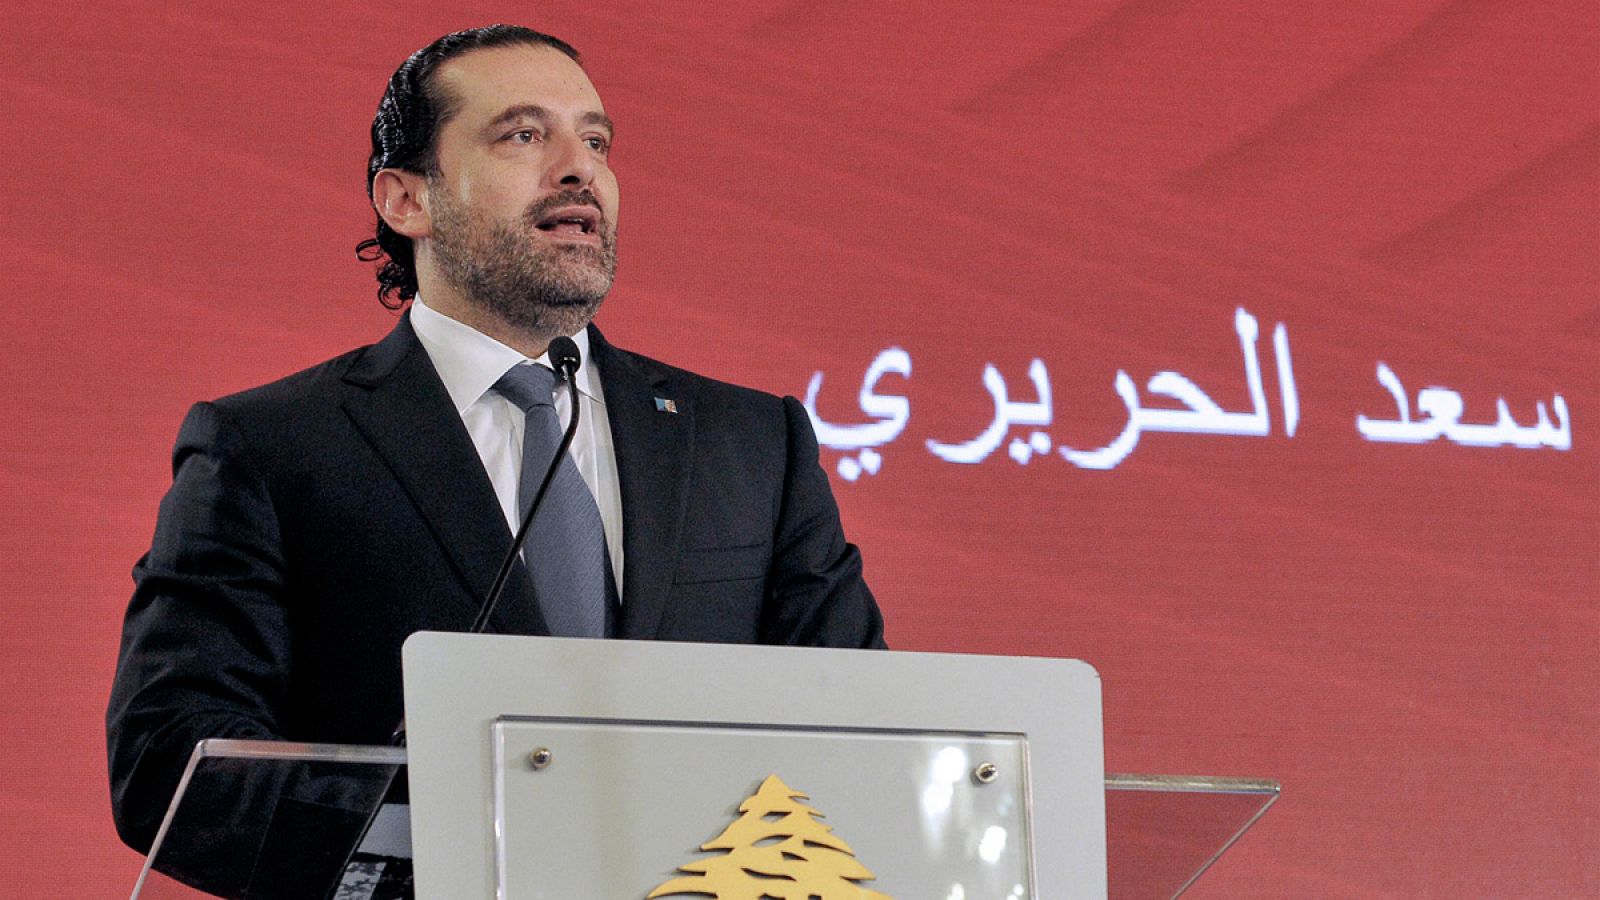 El primer ministro del Líbano, Saad Hariri, habla en una conferencia en Beirut